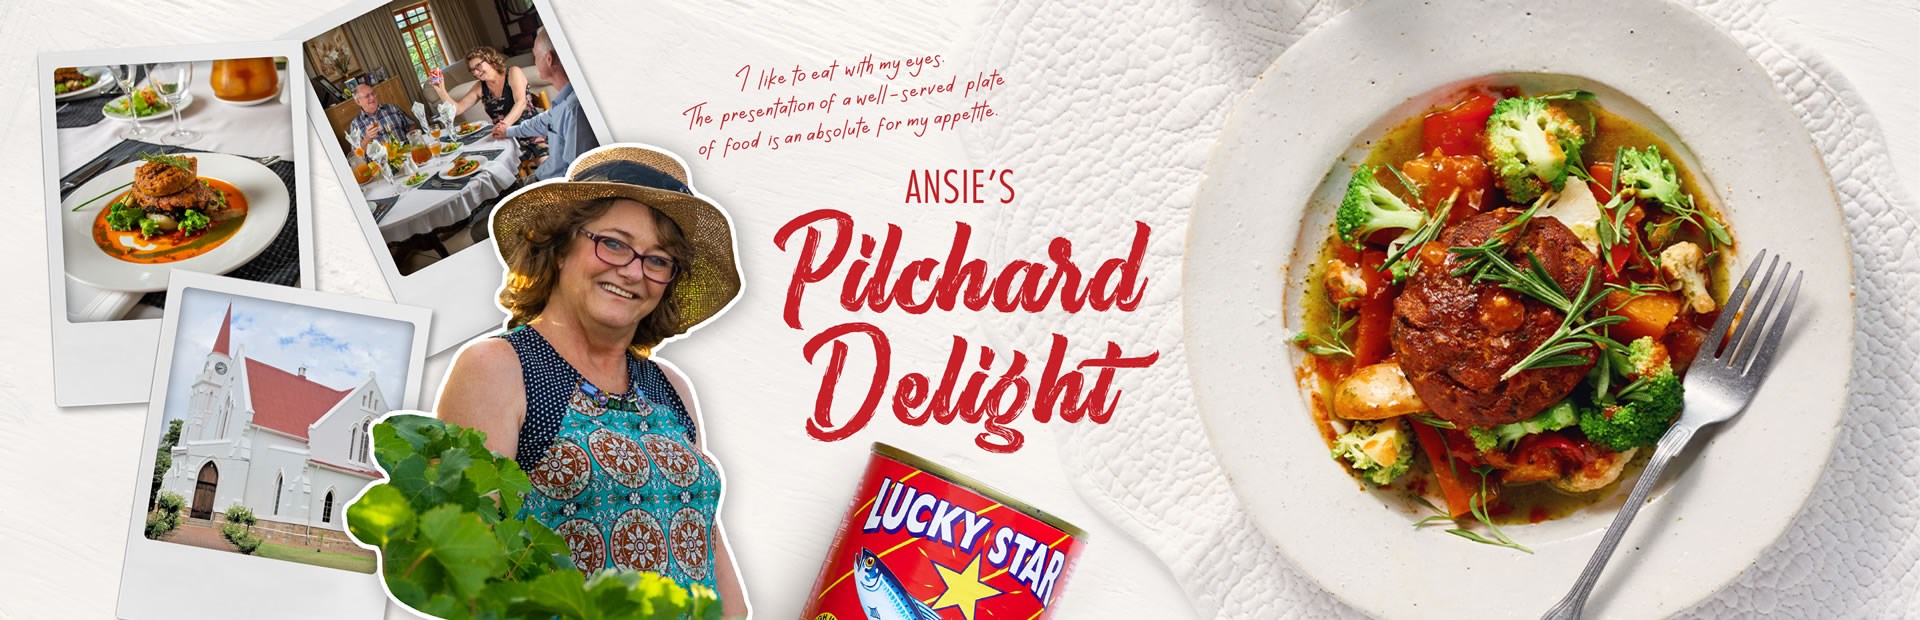 ANSIE’S Pilchard Delight